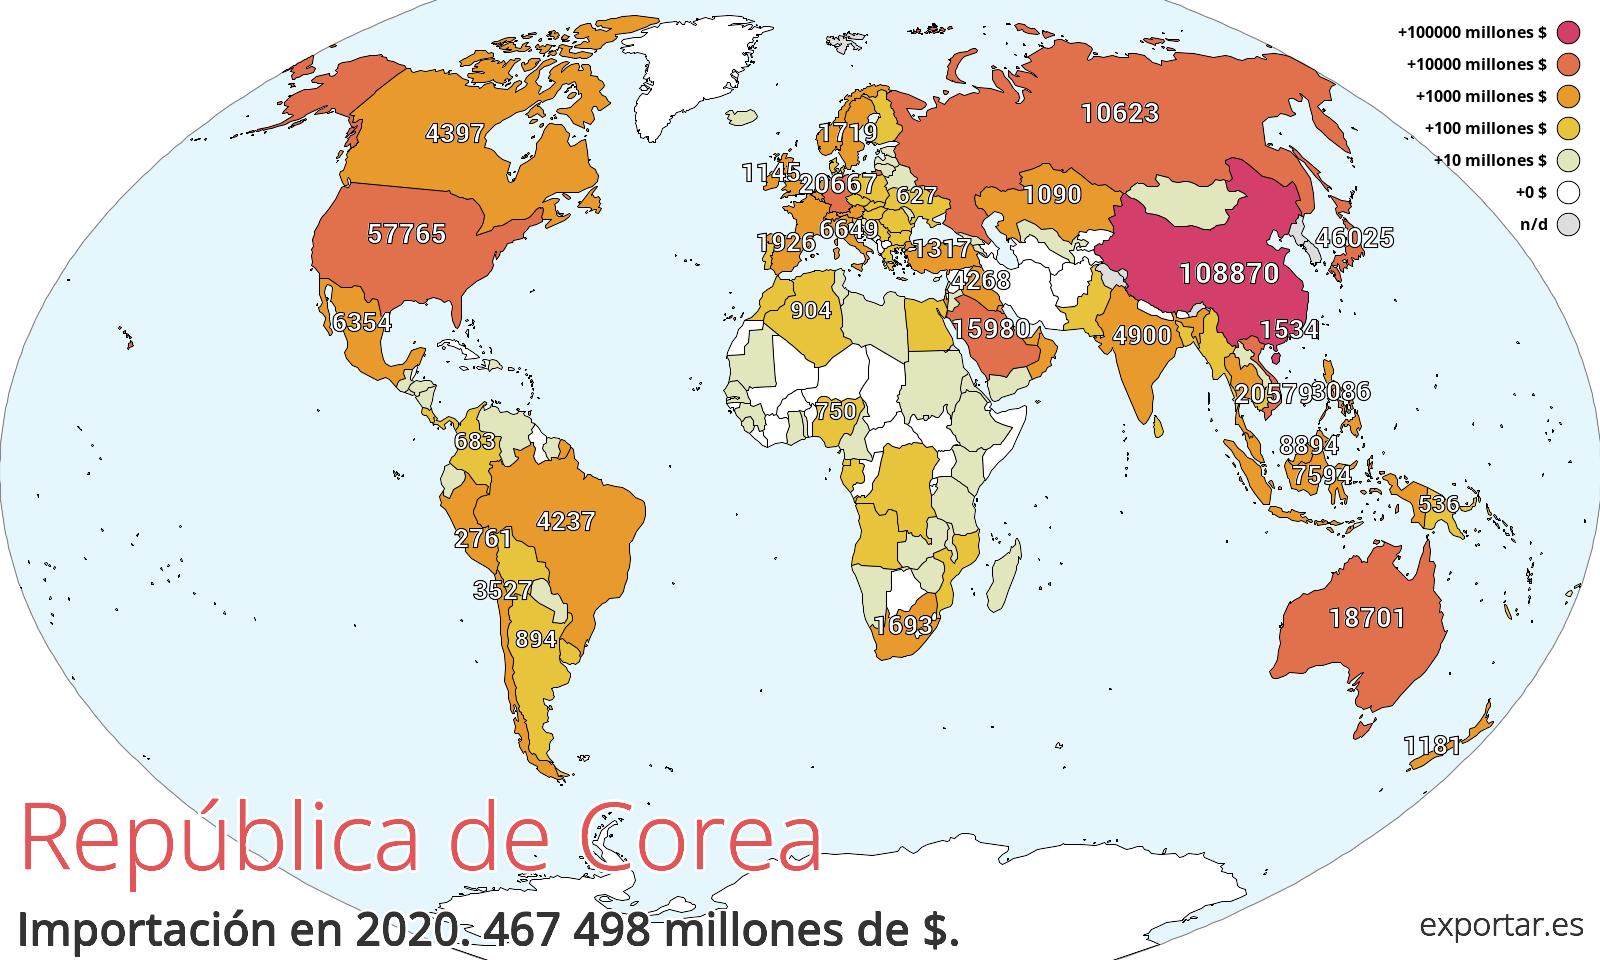 Mapa de importación de República de Corea en 2020.